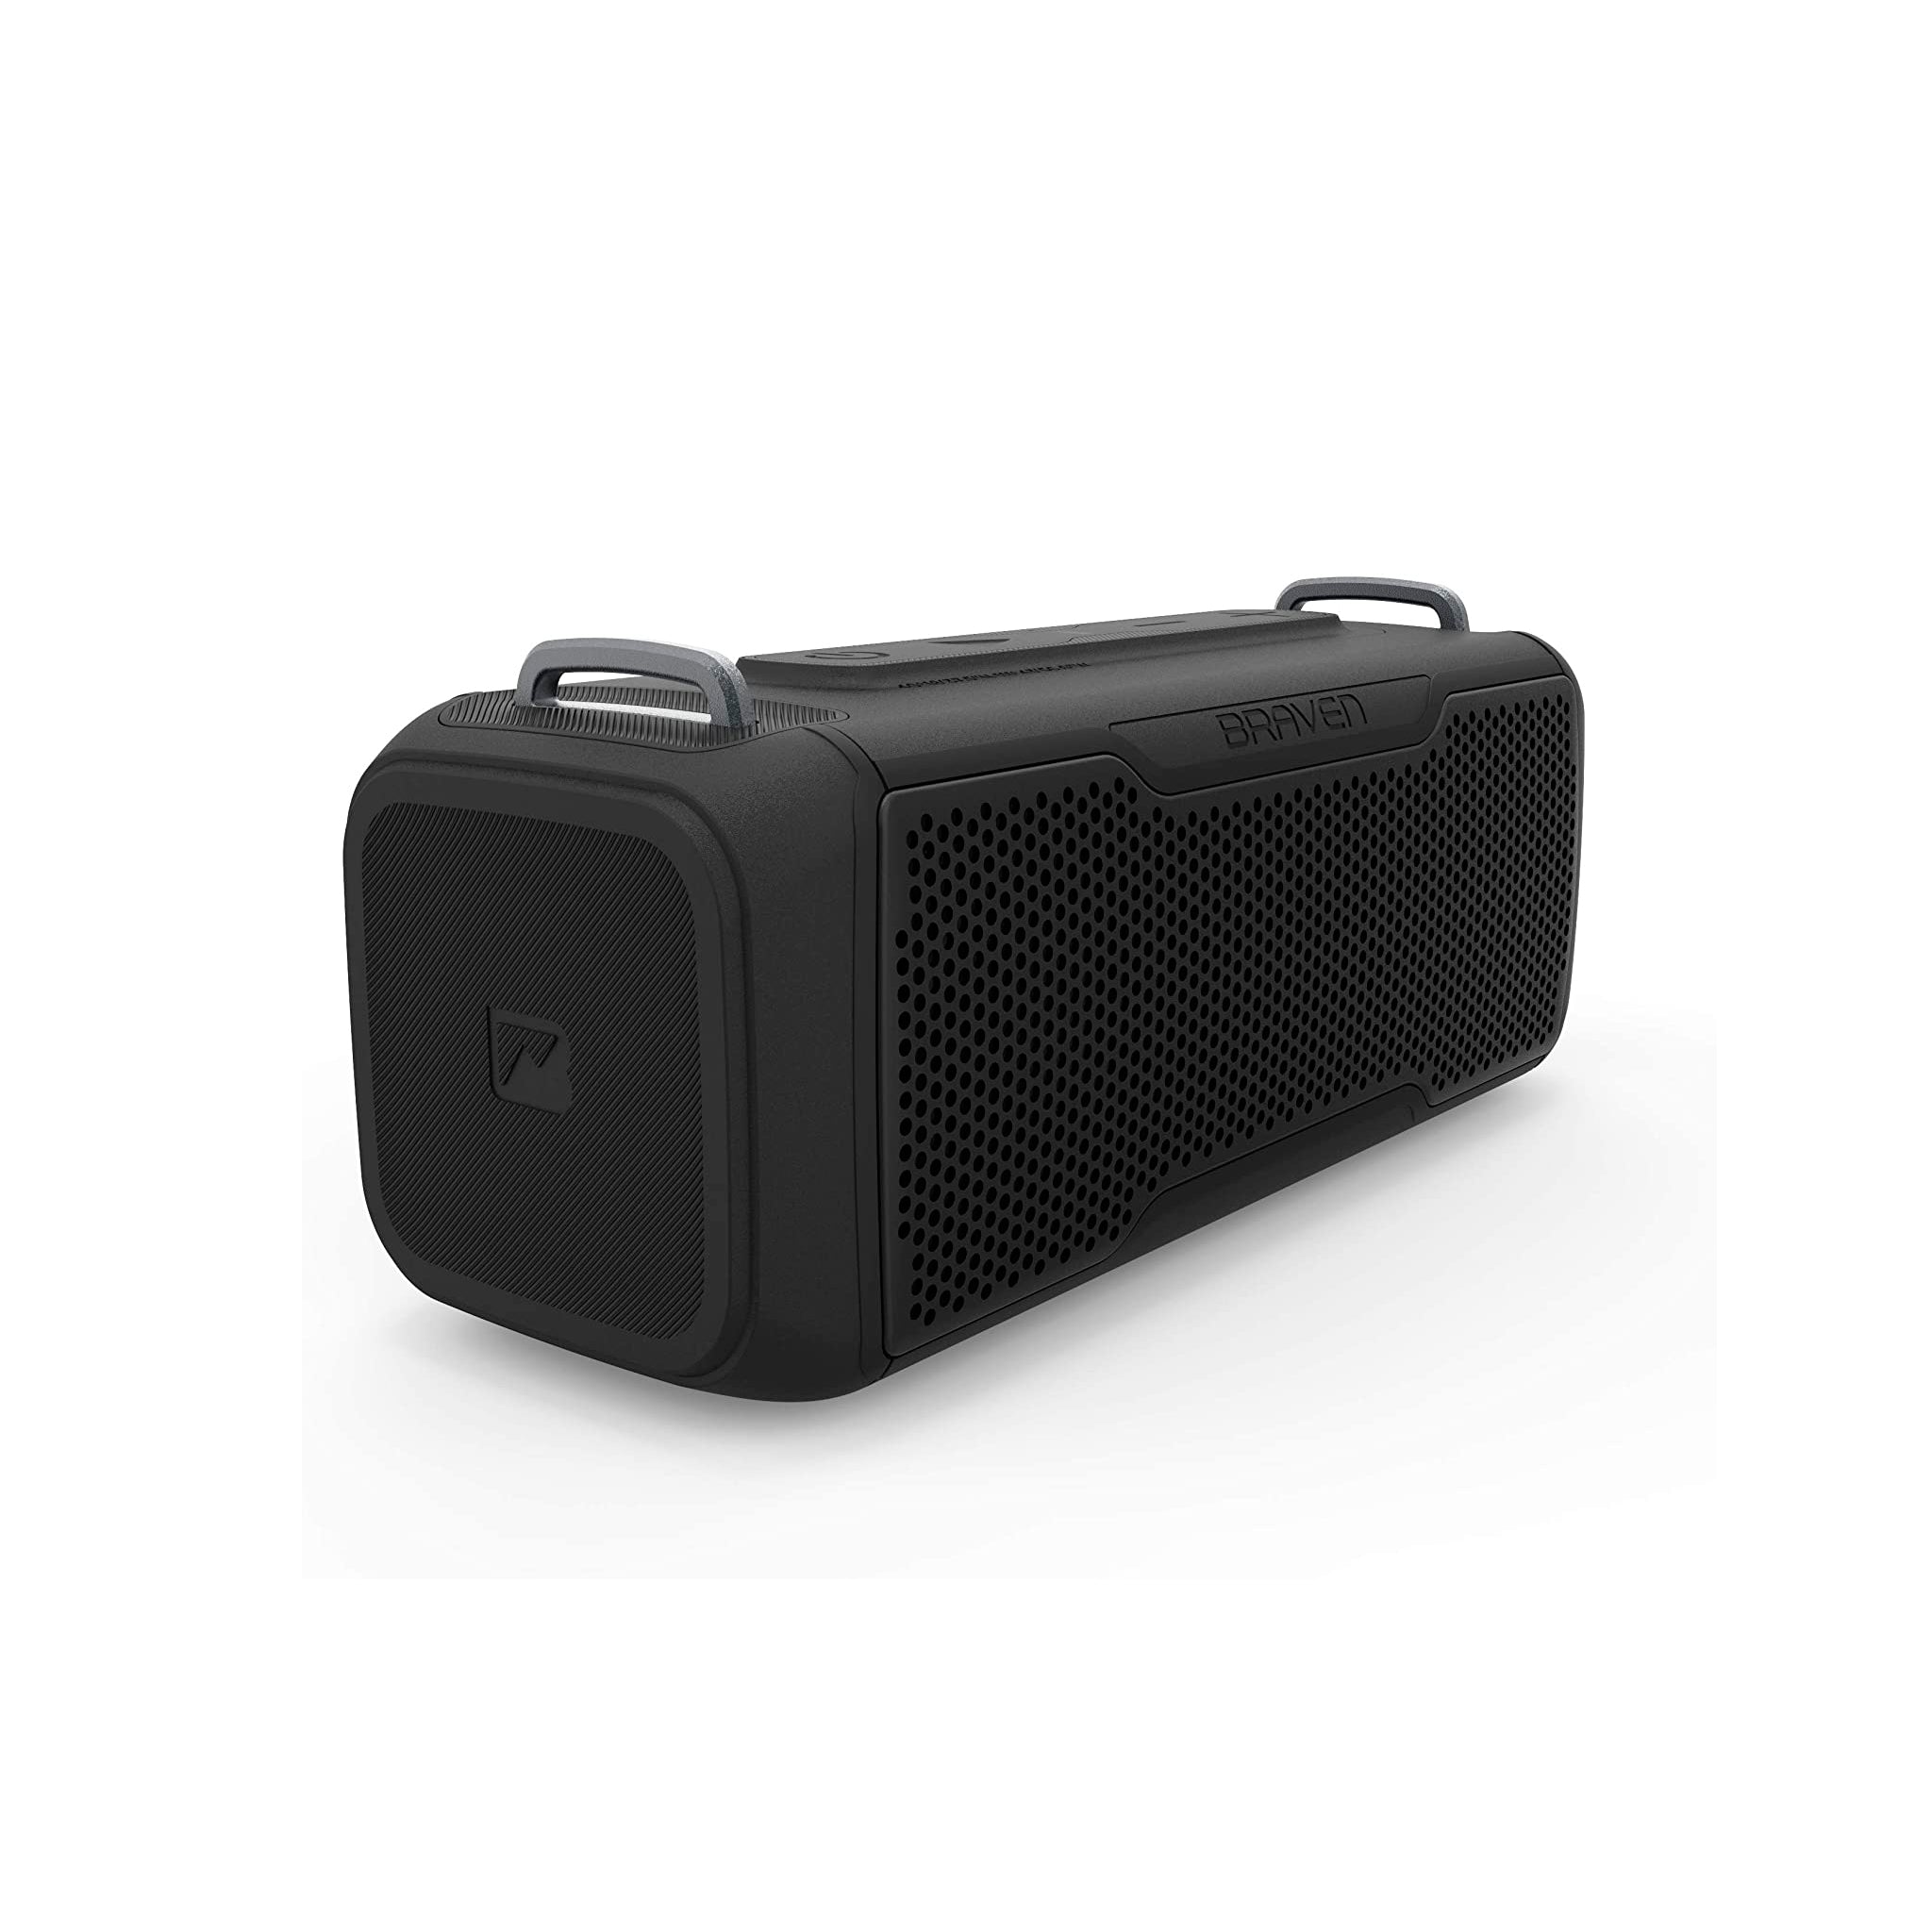 Braven - Brv-x/2 Waterproof Bluetooth Speaker - Black